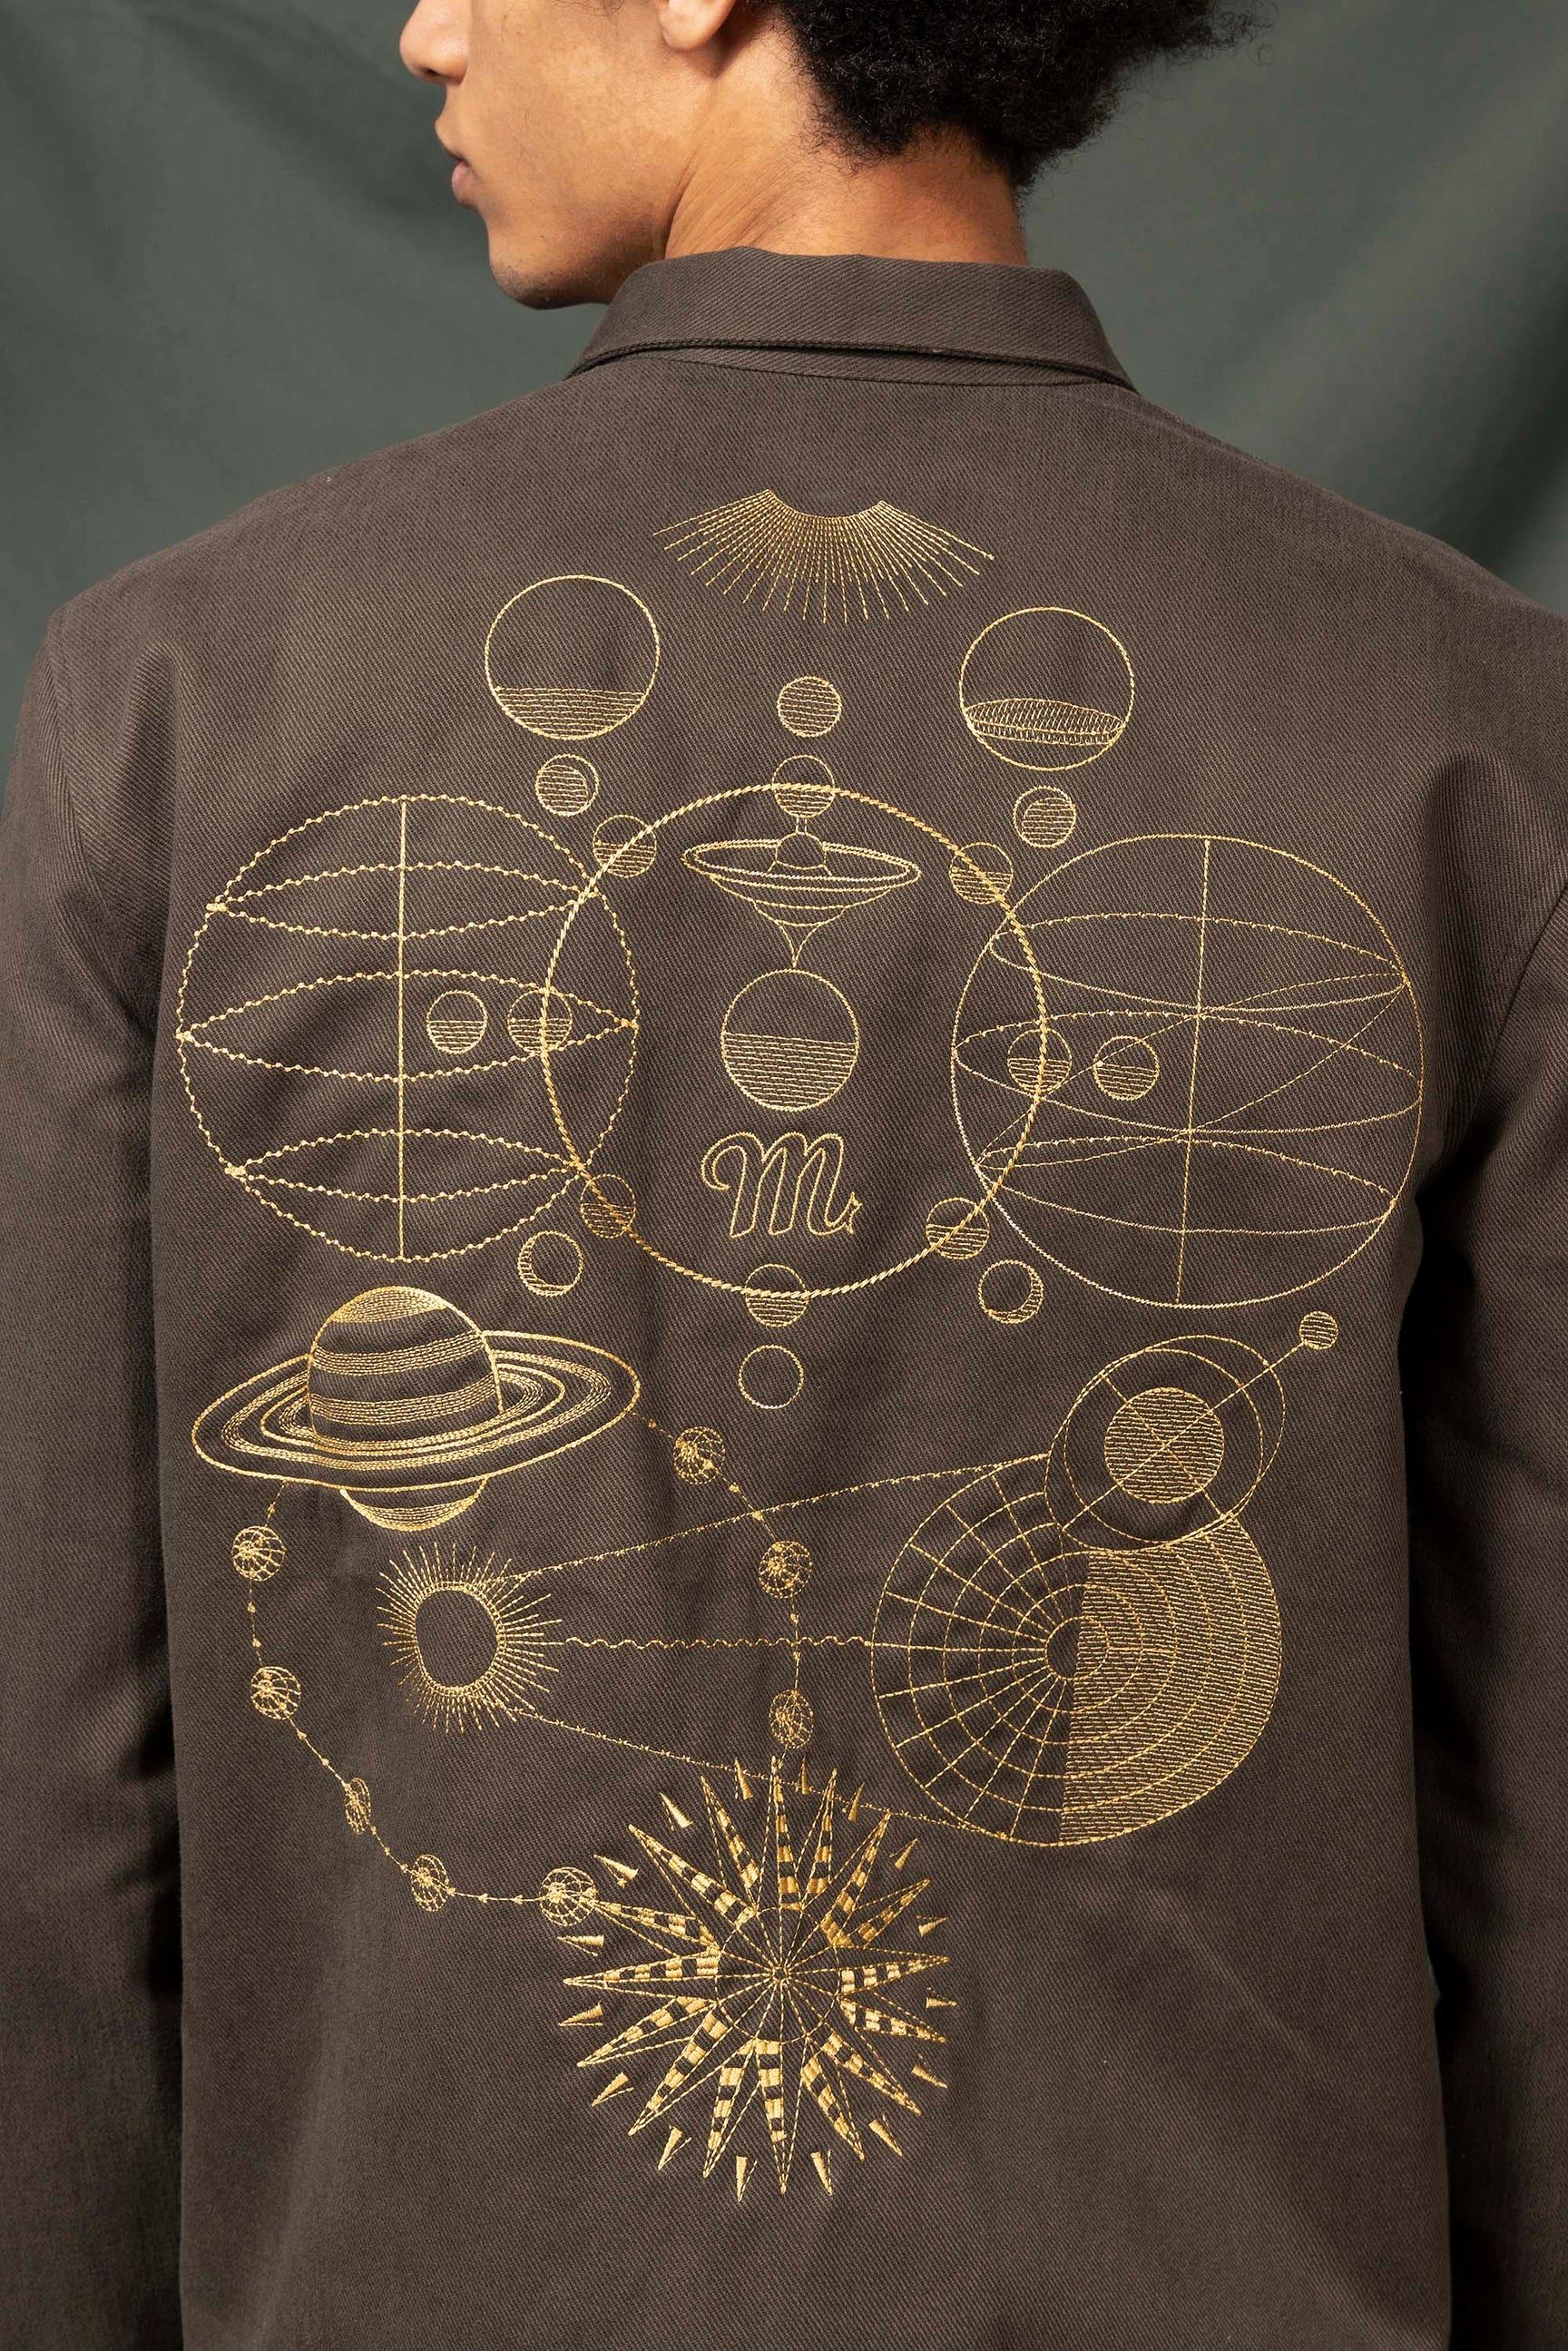 Überhemd mit Mondsystem-Stickerei - Misericordia